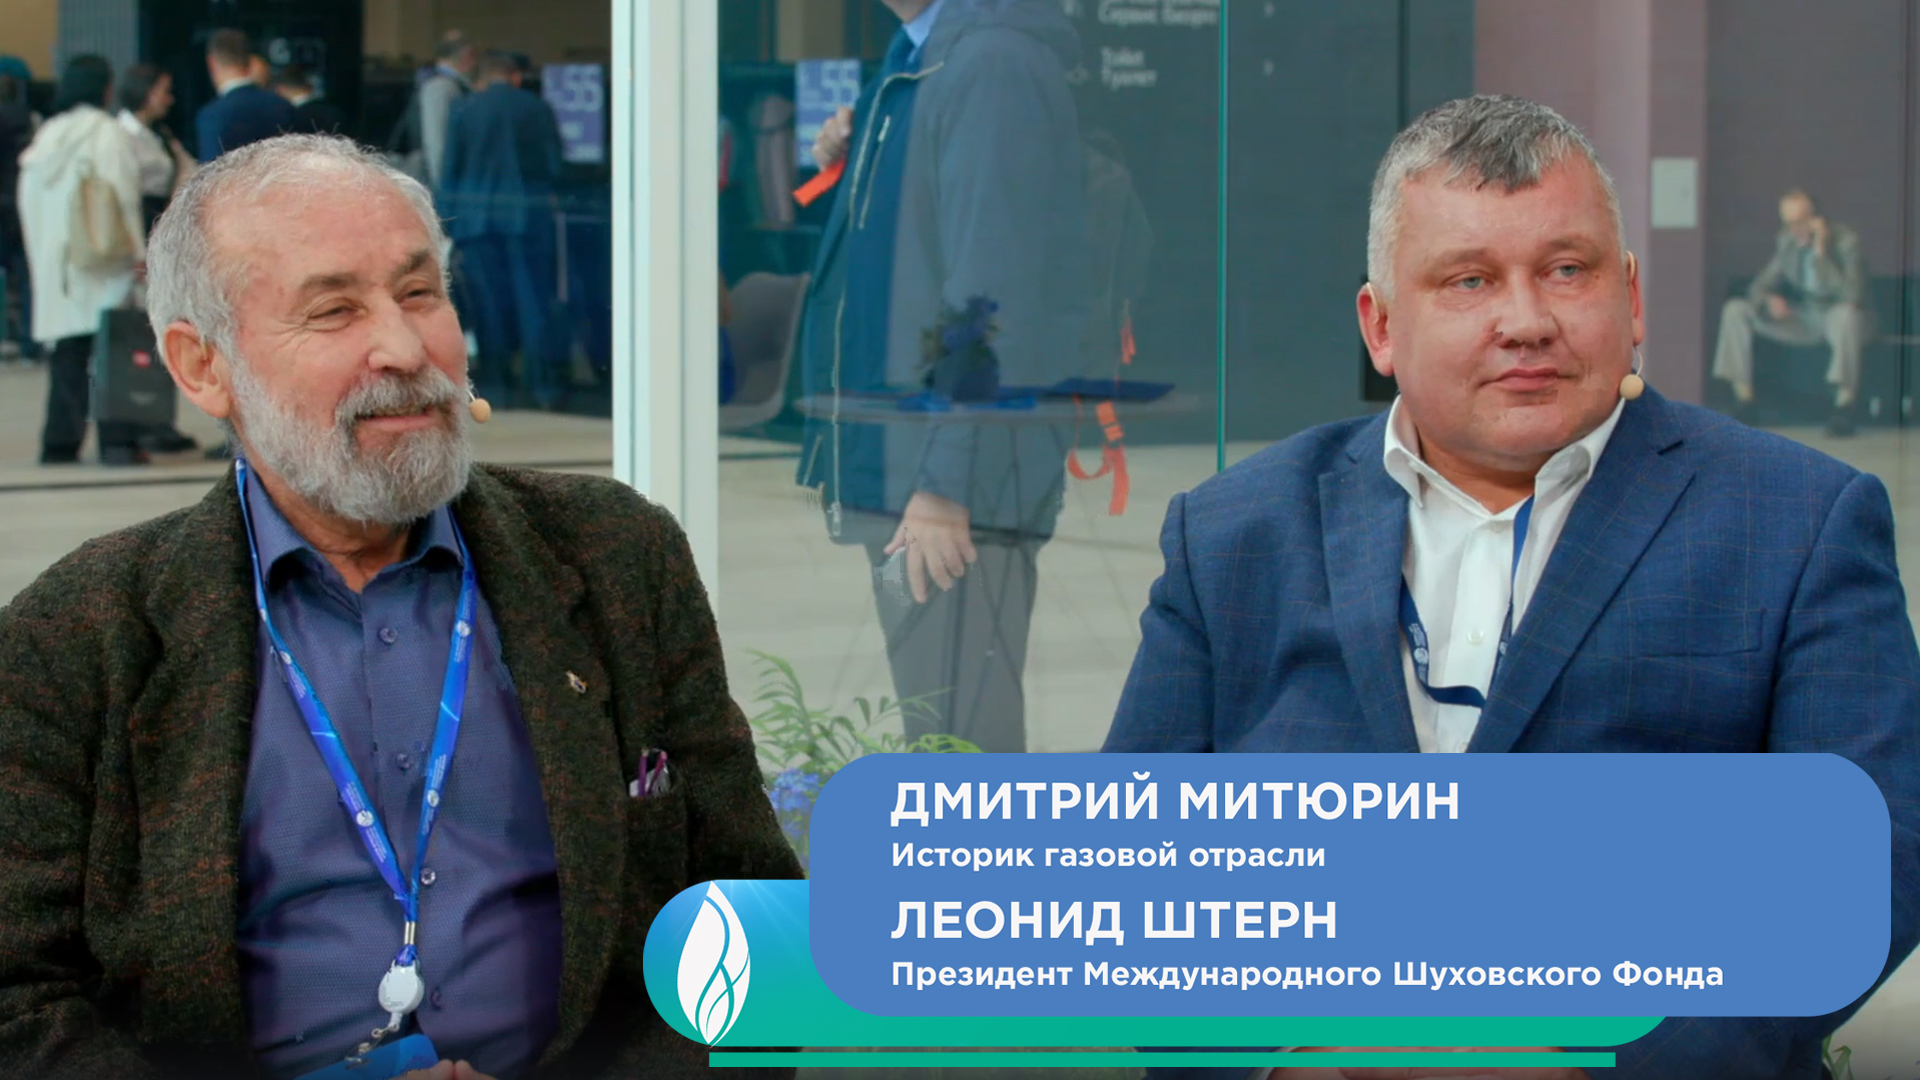 Дмитрий Митюрин, историк газовой отрасли и Леонид Штерн, президент Международного Шуховского Фонда